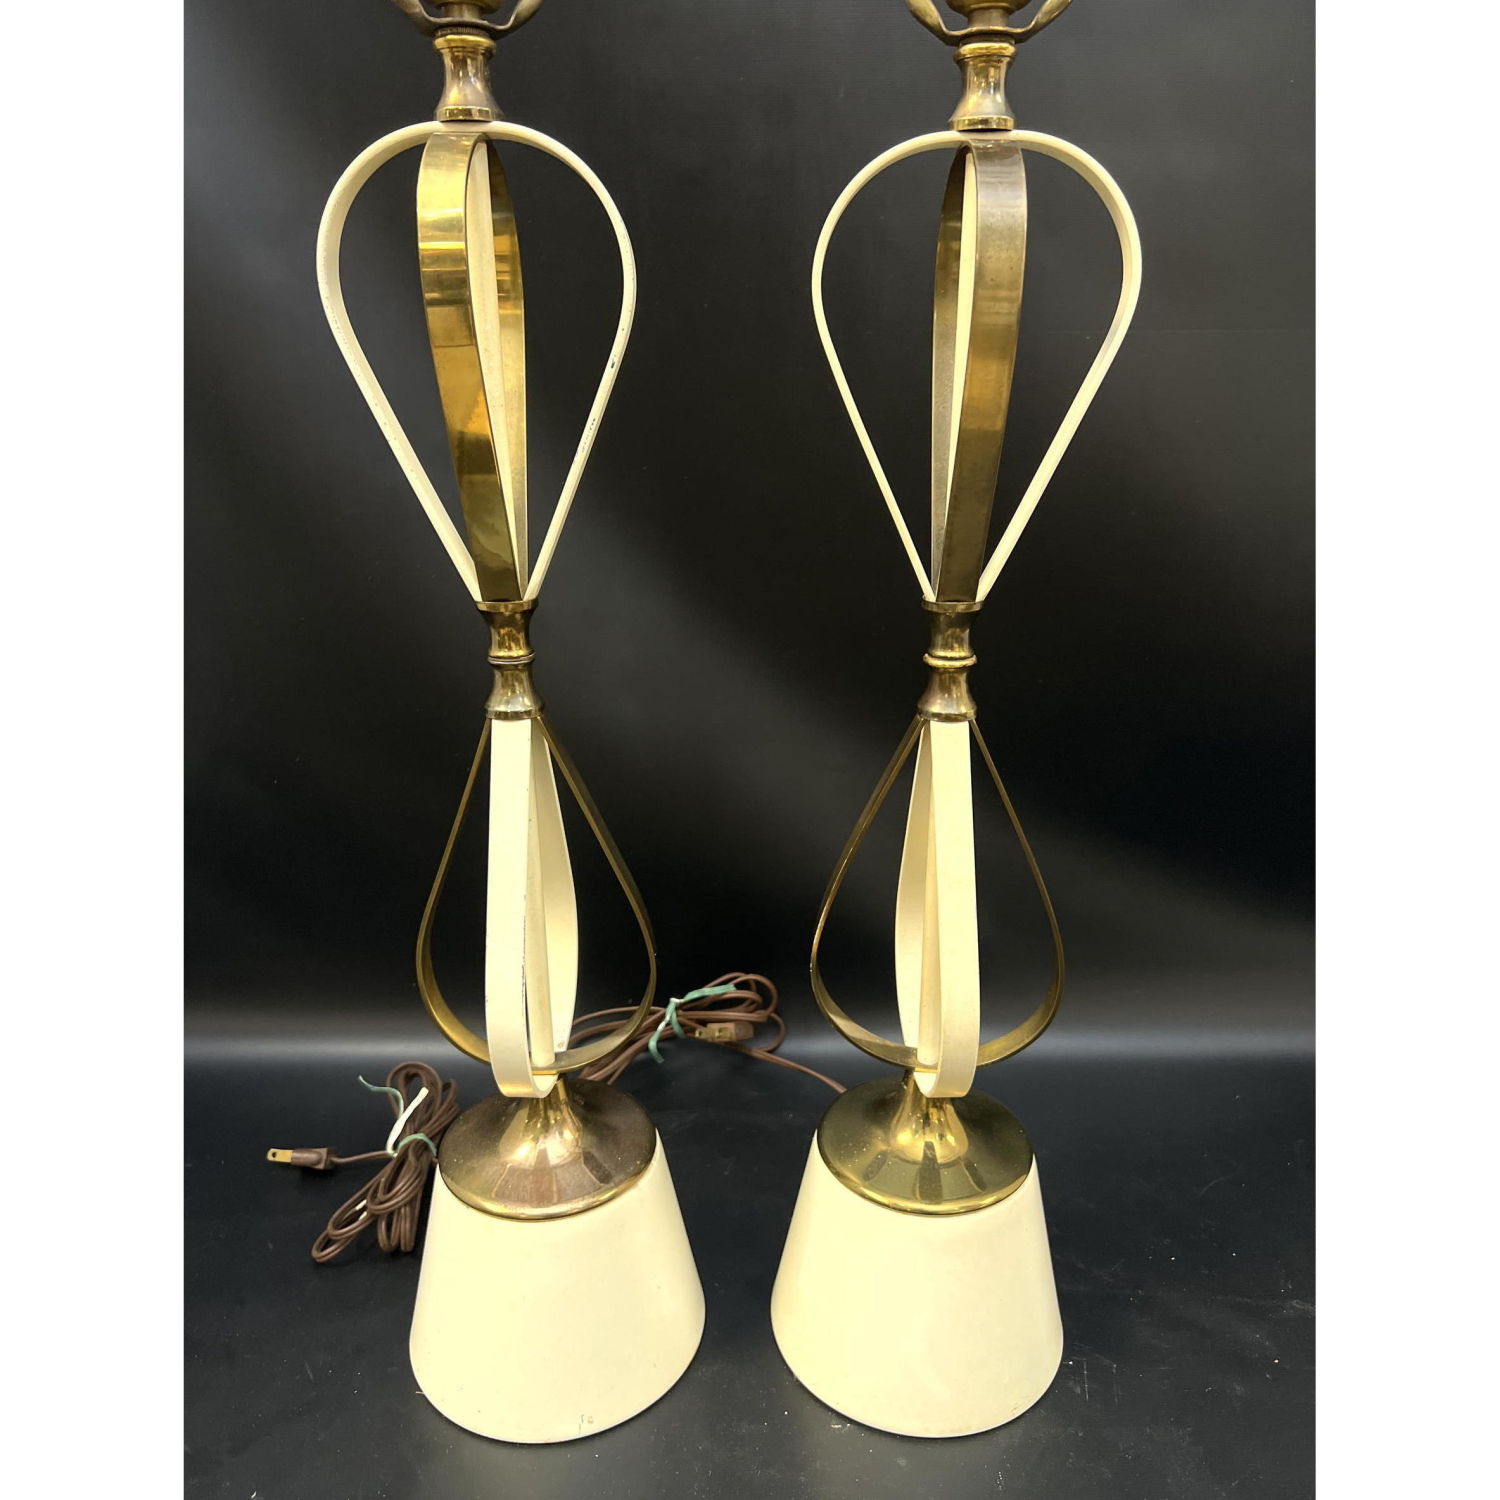 Pr Modernist Table Lamps Brass 2b95af